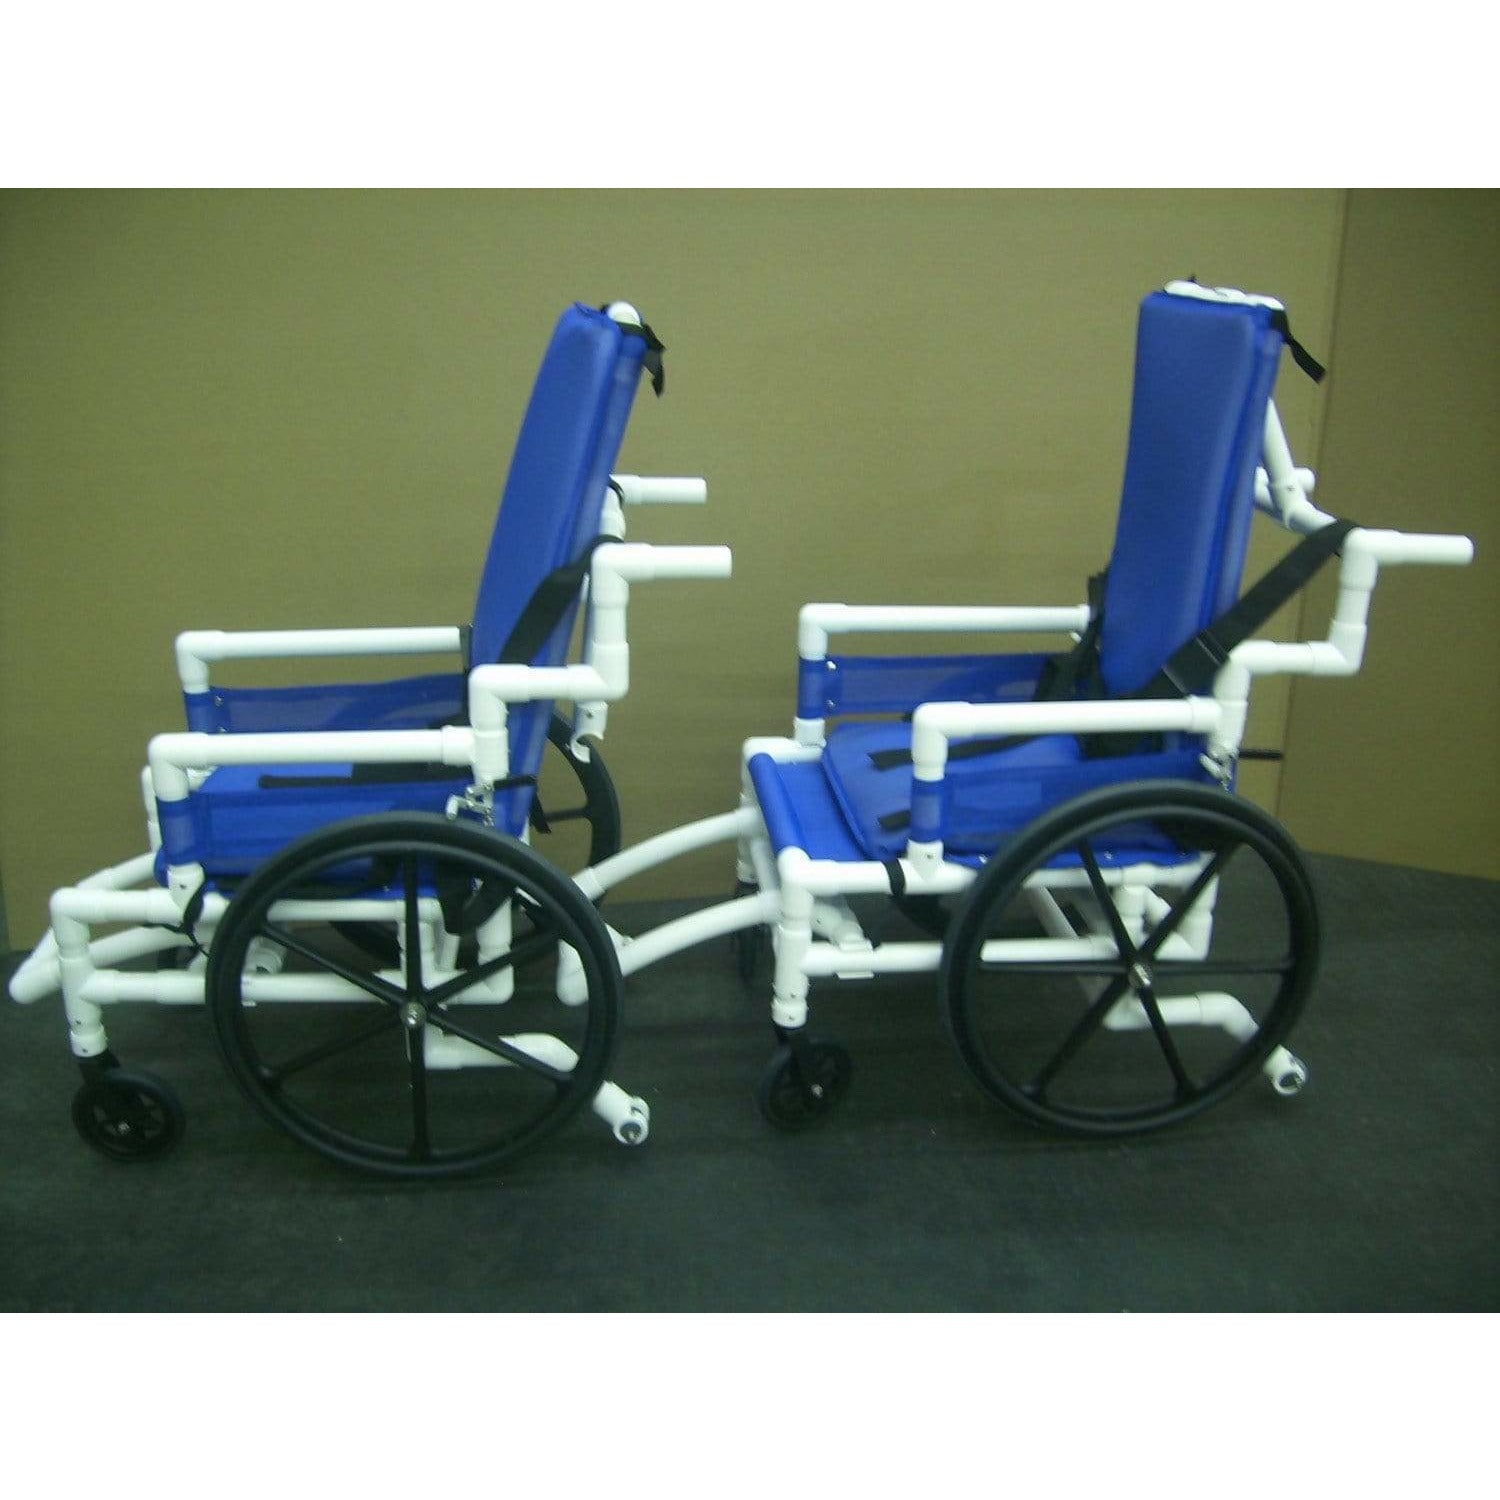 Aquatrek2 Aquatic Pool Wheelchair AQ-250-WC